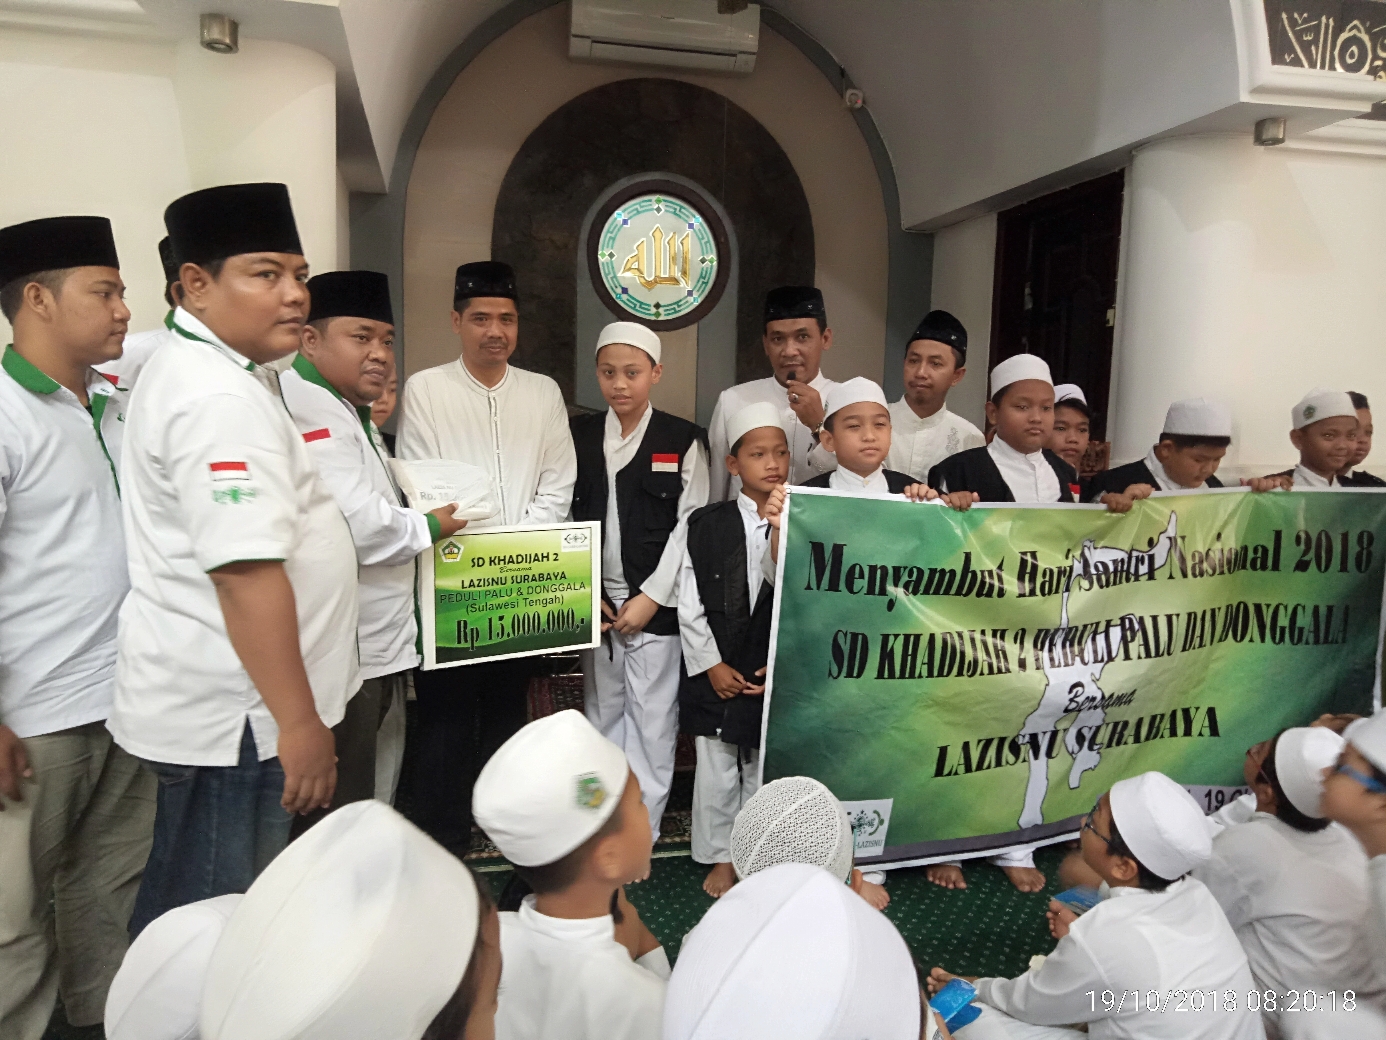 Kepala Sekolah SD Khadijah 2 saat serahkan dana ke Lazisnu Surabaya